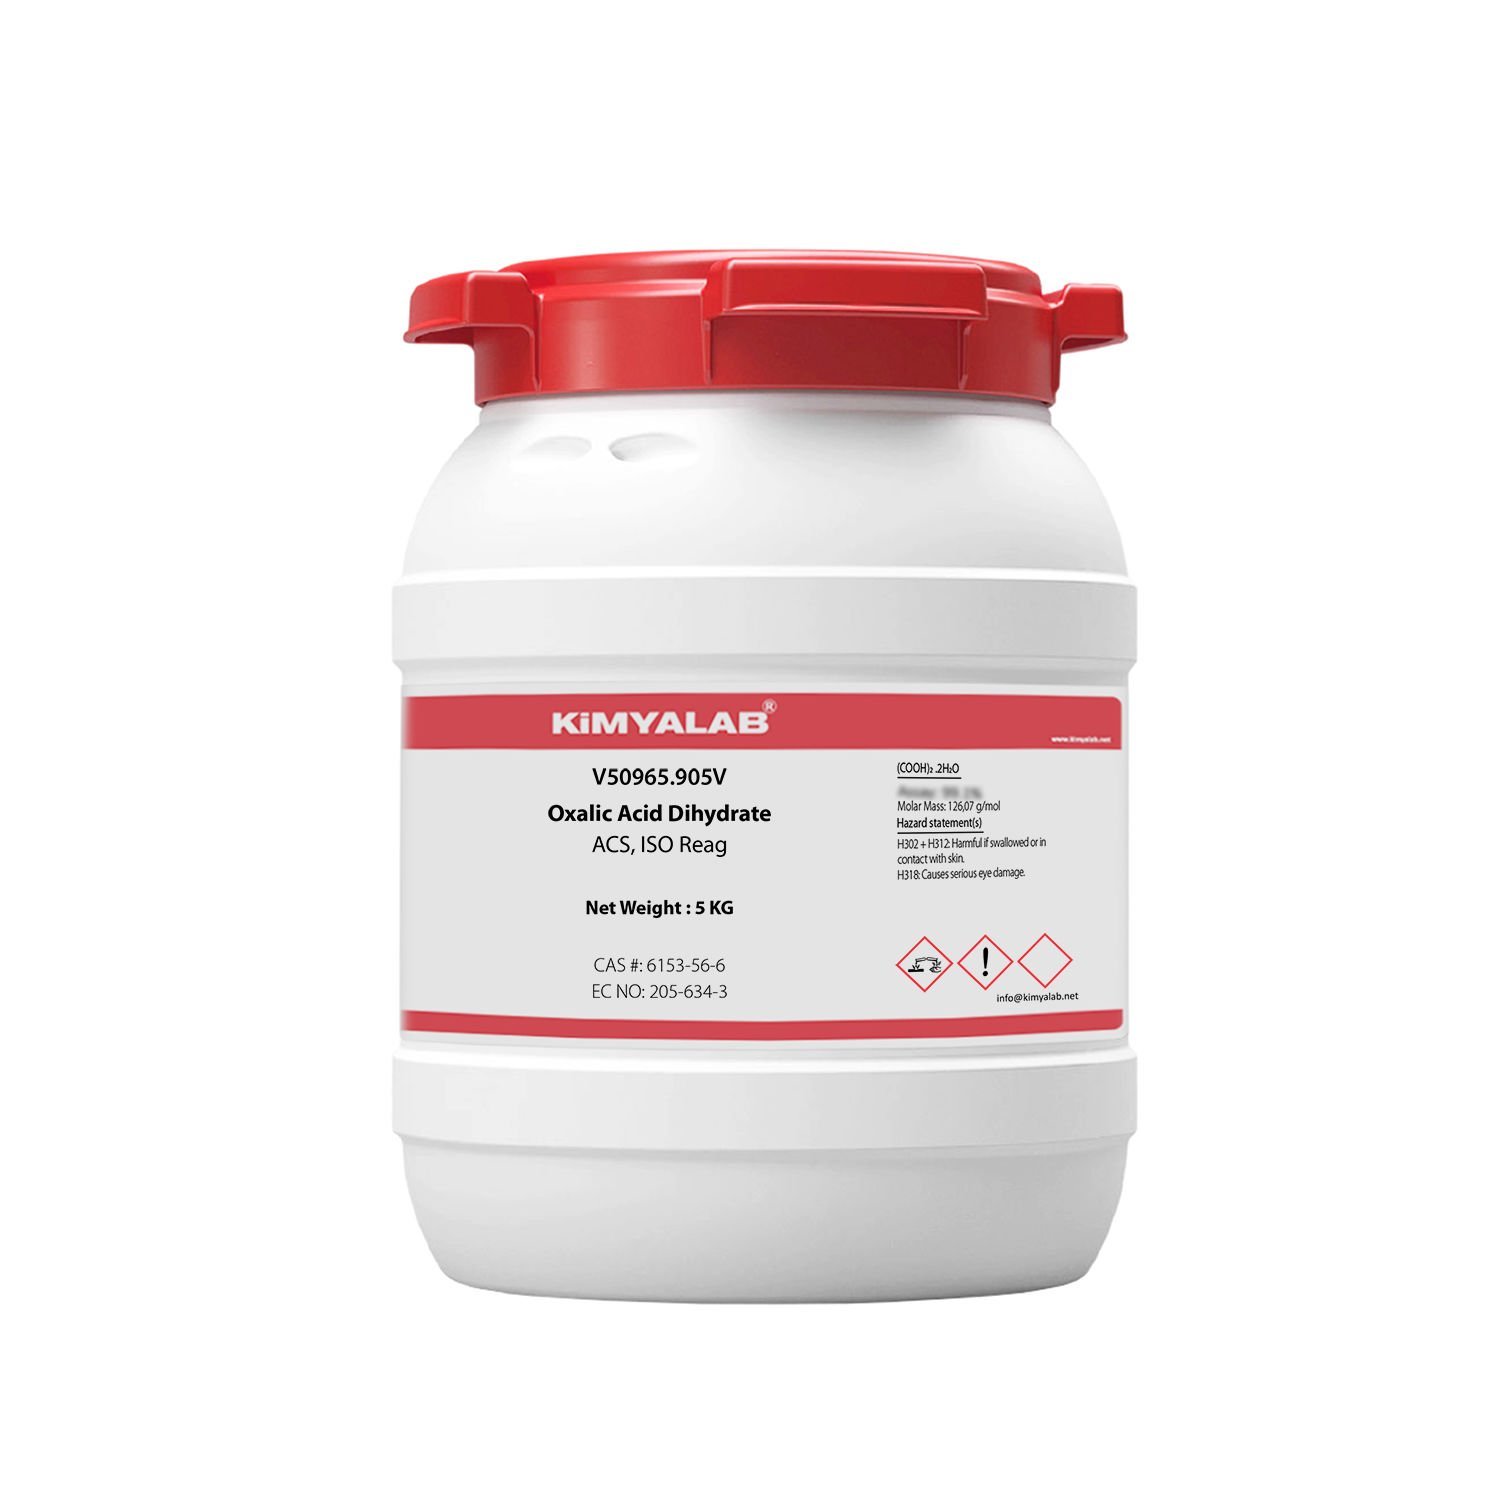 Kimyalab Oksalik Asit 5 Kg - Oxalic Acid Dihydrate - Okzalik Asit